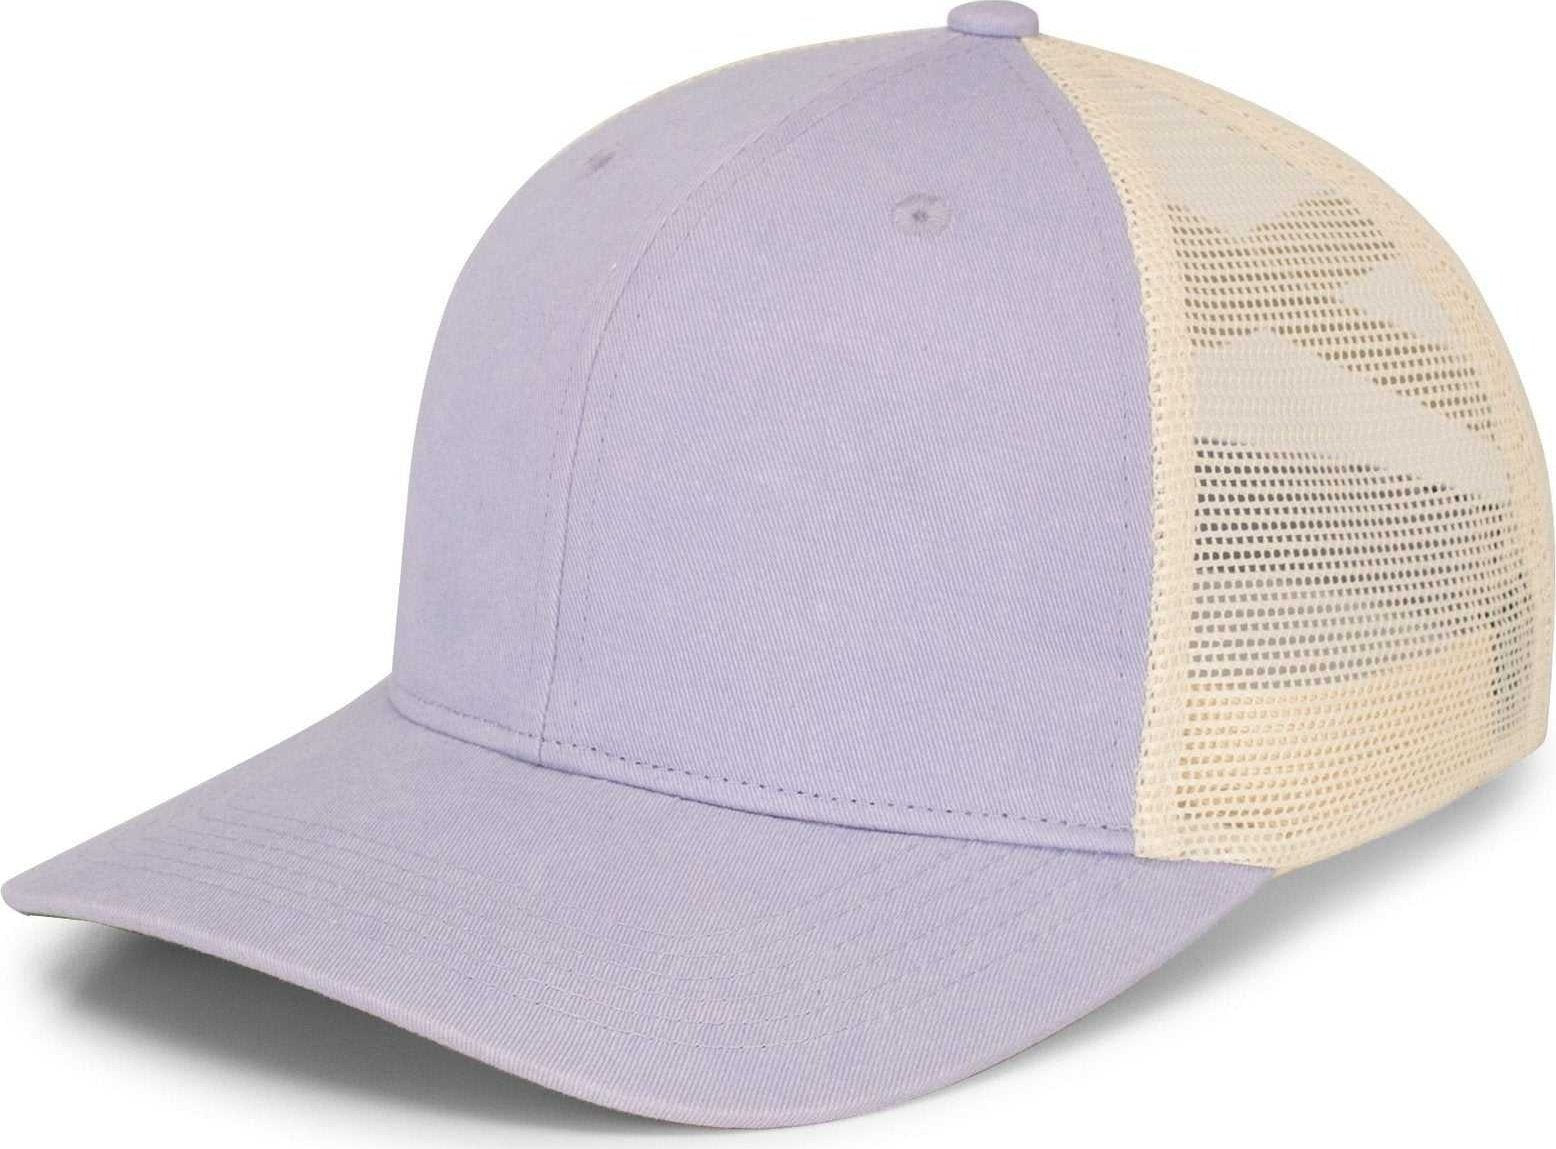 Pacific Headwear P130 Ladies Ponytail Cap - Lavender Beige Lavender - HIT a Double